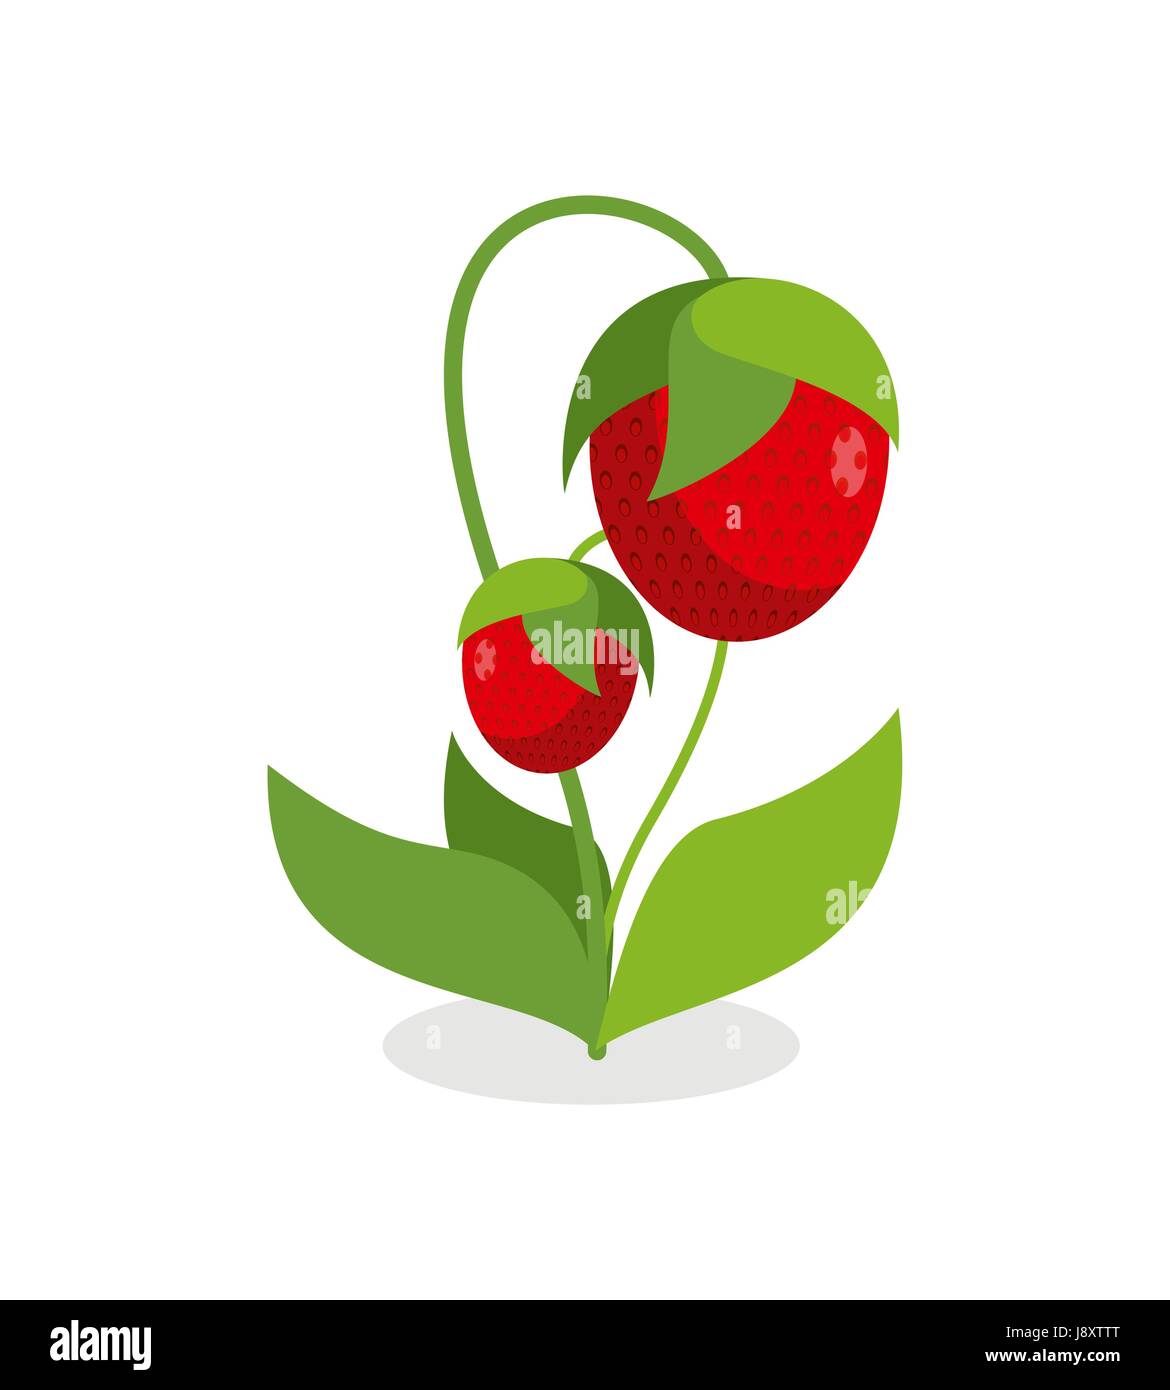 Rote Erdbeeren mit grünen Stielen. Saftige Beere mit Blättern auf einem weißen Hintergrund. Vektor-Illustration eines Gartens Frucht. Stock Vektor